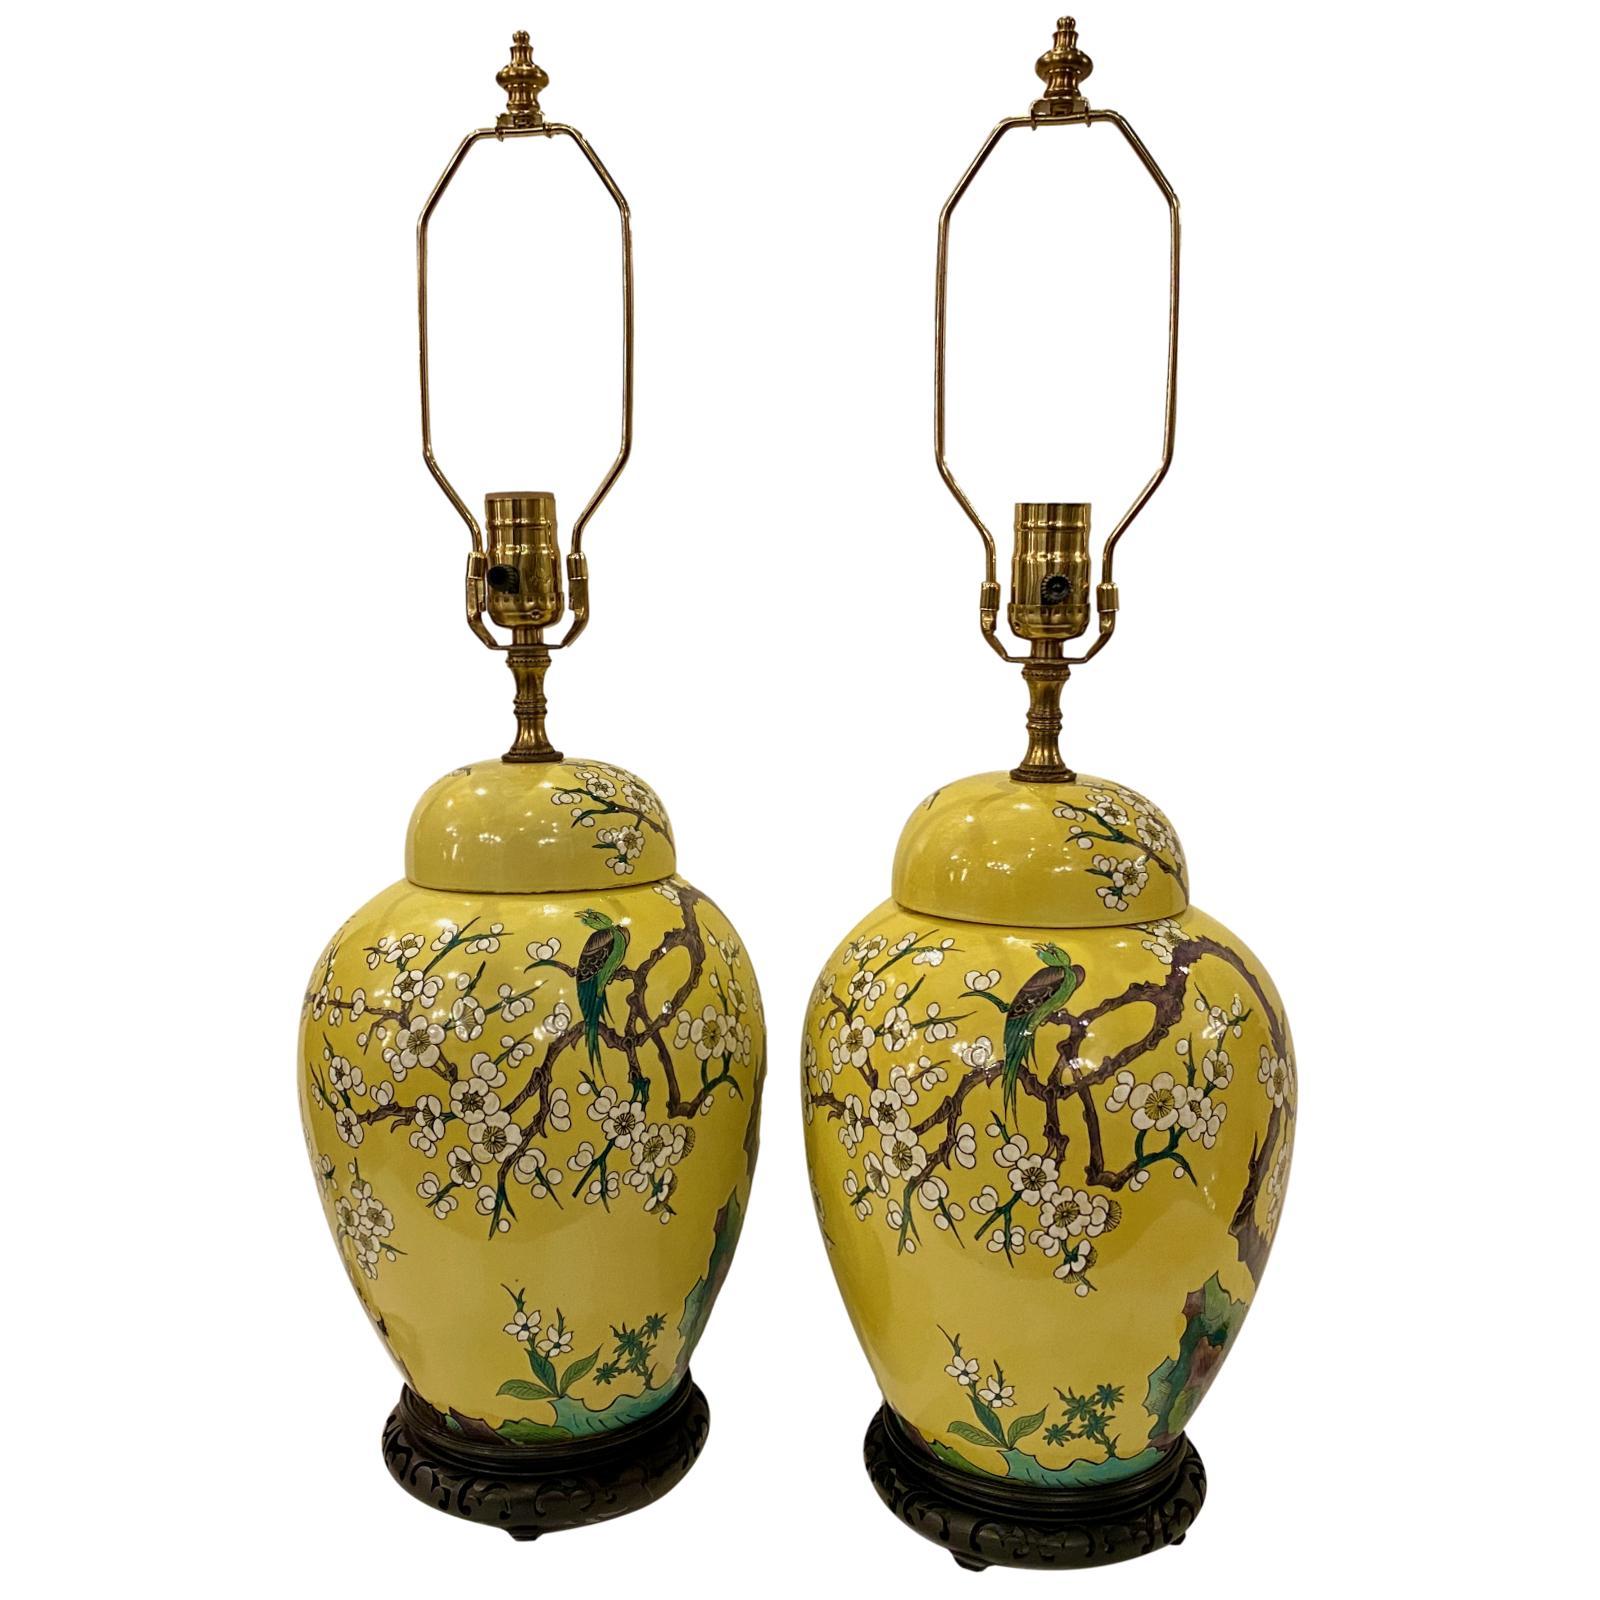 Ein Paar chinesische, handbemalte, glasierte Porzellan-Ingwerlampen mit Blumen- und Vogelmotiv und Holzsockel aus den 1920er Jahren.

Abmessungen:
Höhe des Körpers 14